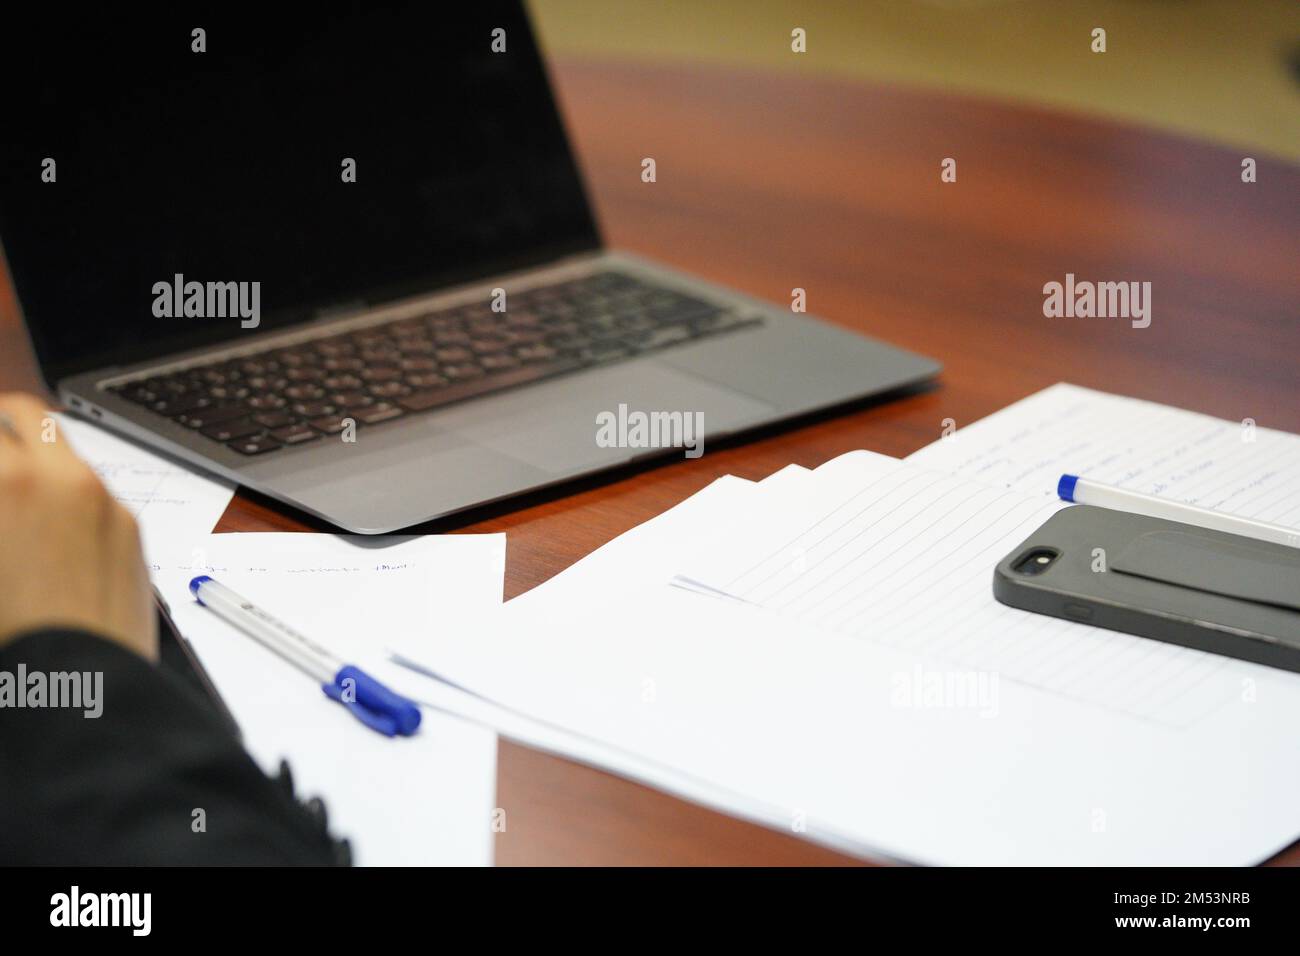 Una persona professionista in una riunione sta scrivendo o prendendo appunti su carta con il portatile aperto. una persona sta studiando duro. Foto Stock